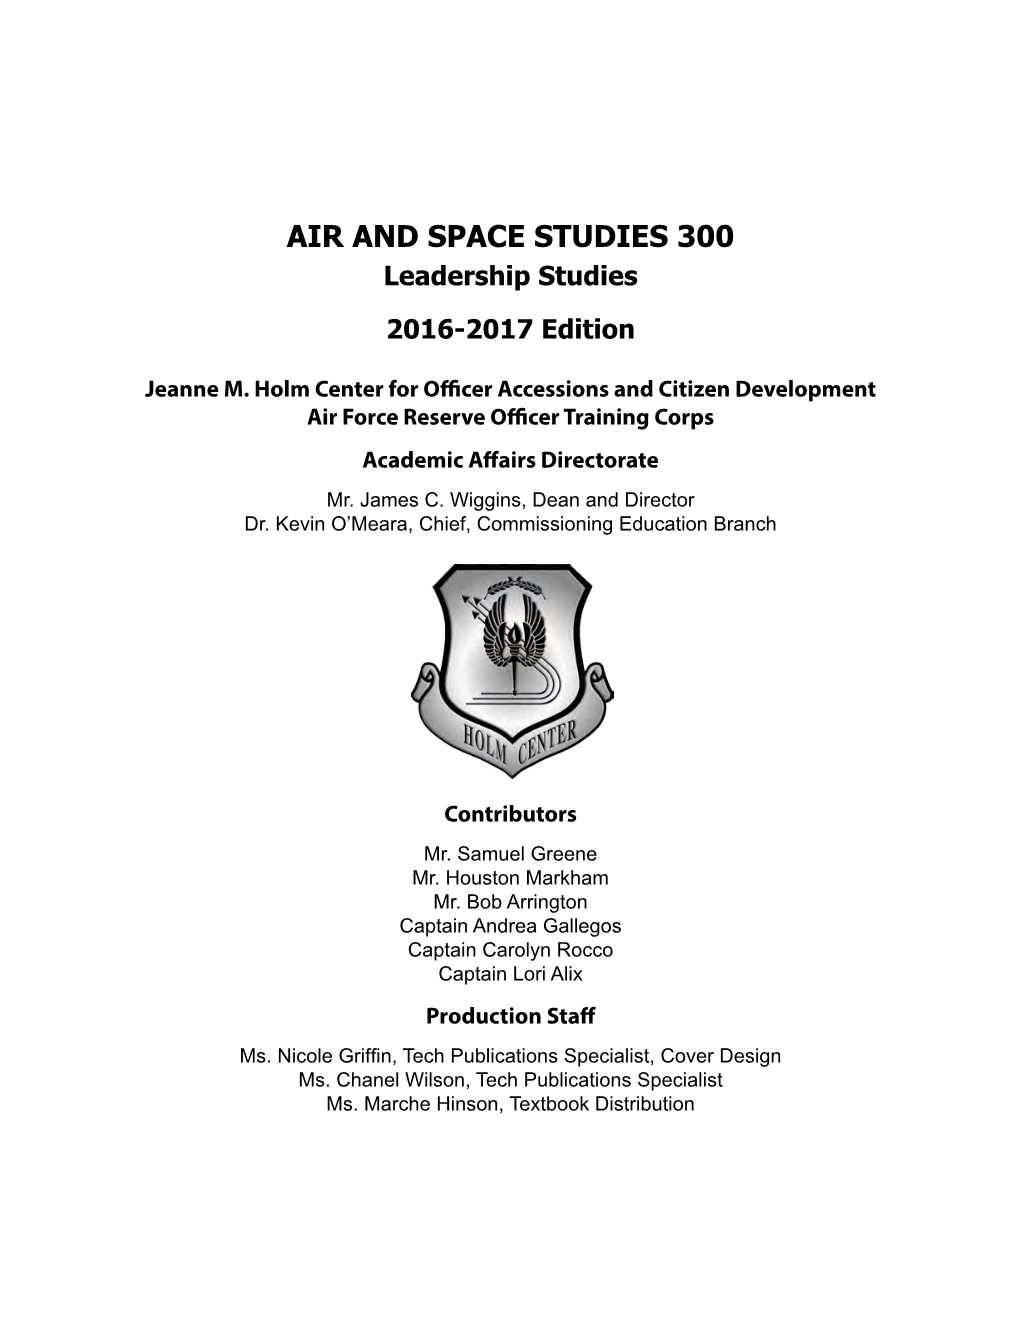 AIR and SPACE STUDIES 300 Leadership Studies 2016-2017 Edition